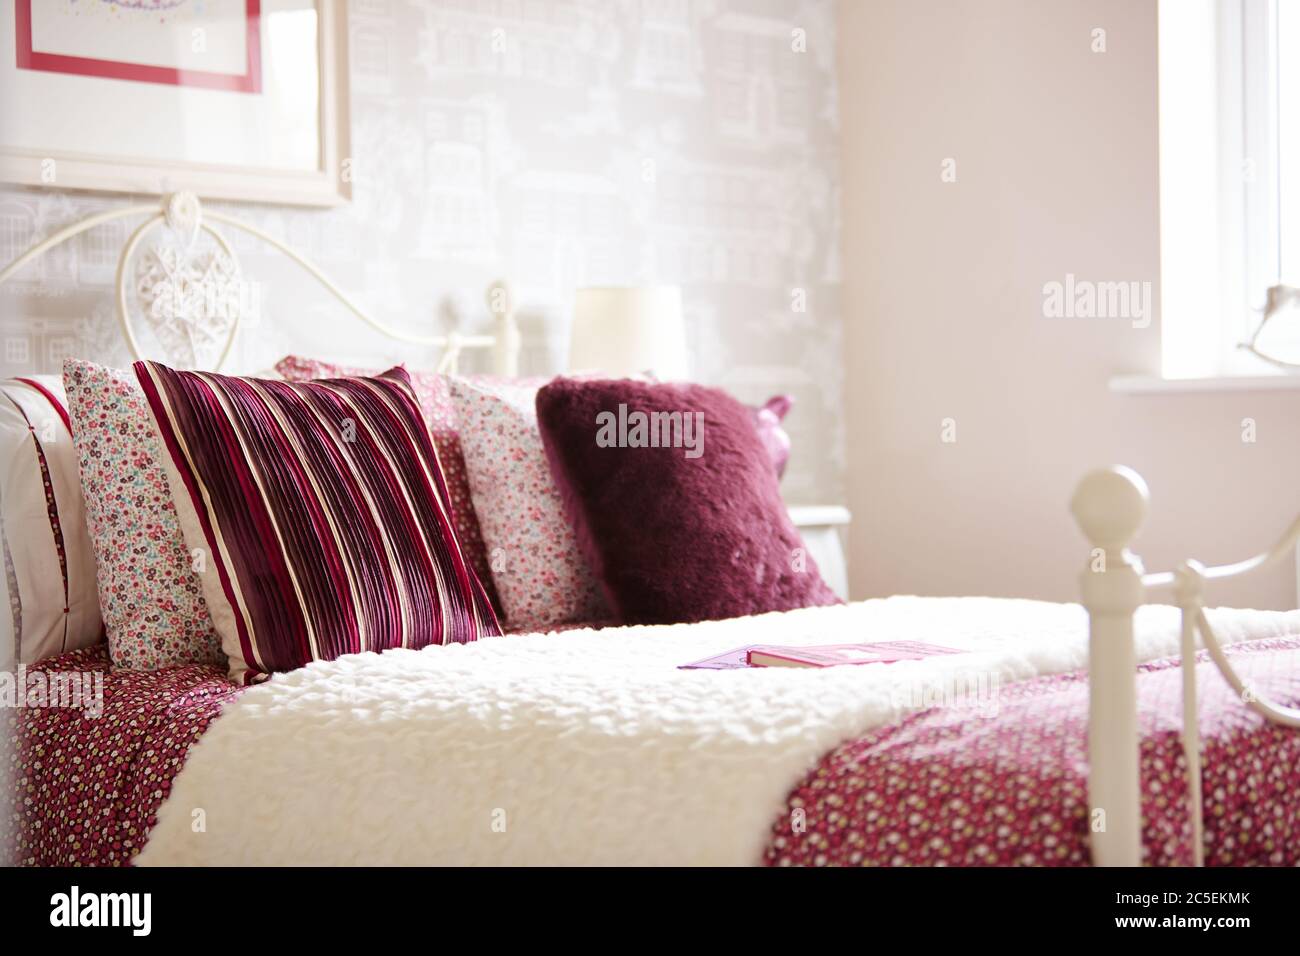 Ein Foto von bunten Kissen und Bettwäsche auf einem Bett im luxuriösen Schlafzimmer Stockfoto